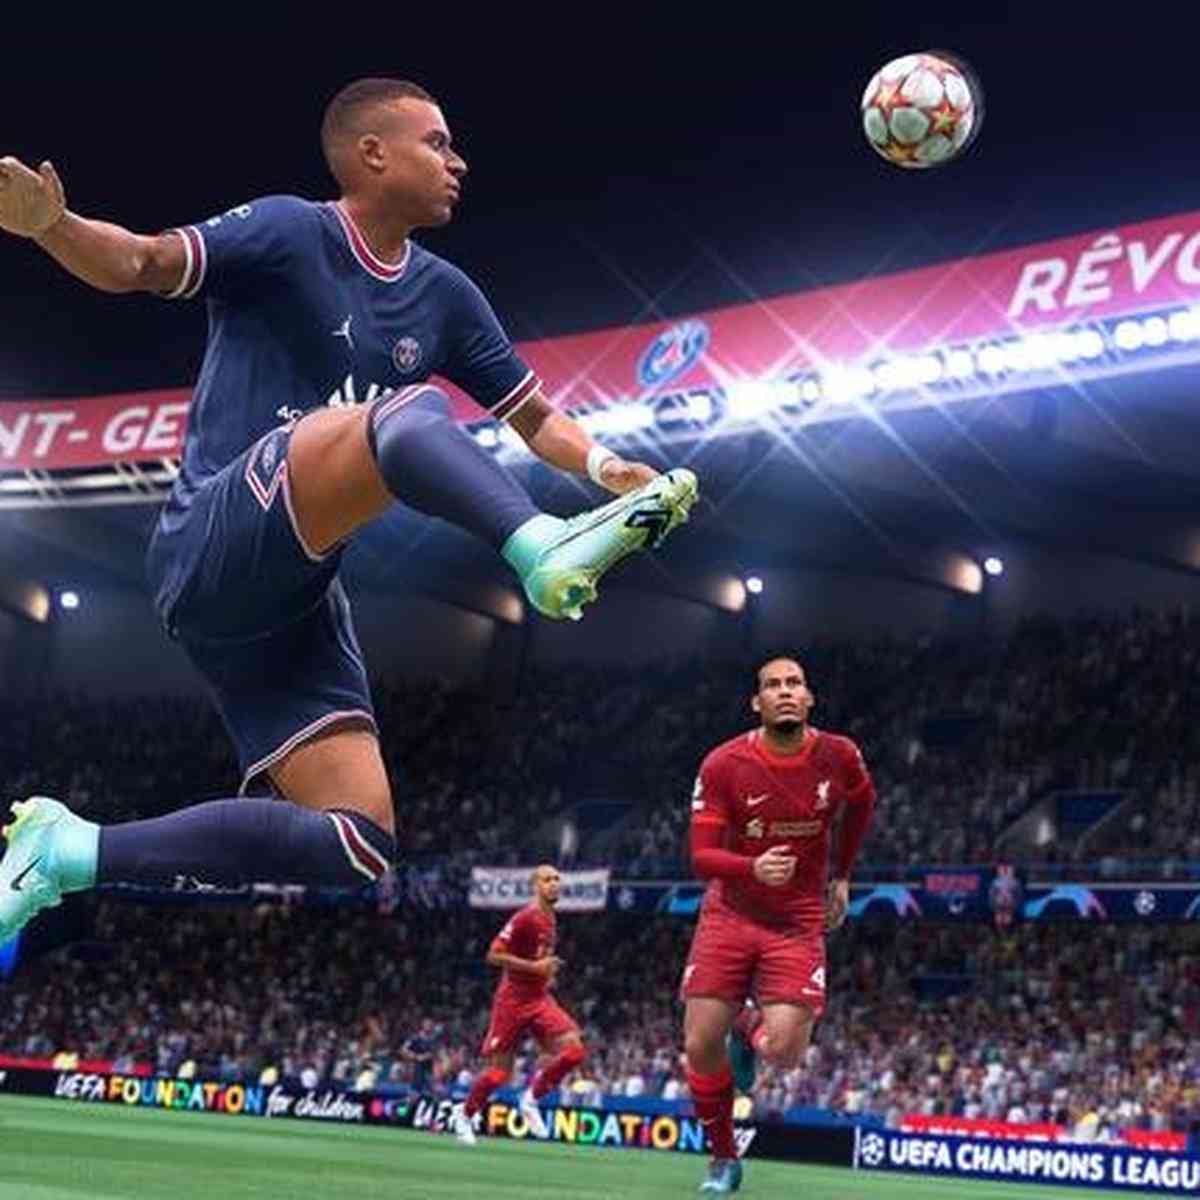 Expanda o mundo do futebol para o virtual através dos games